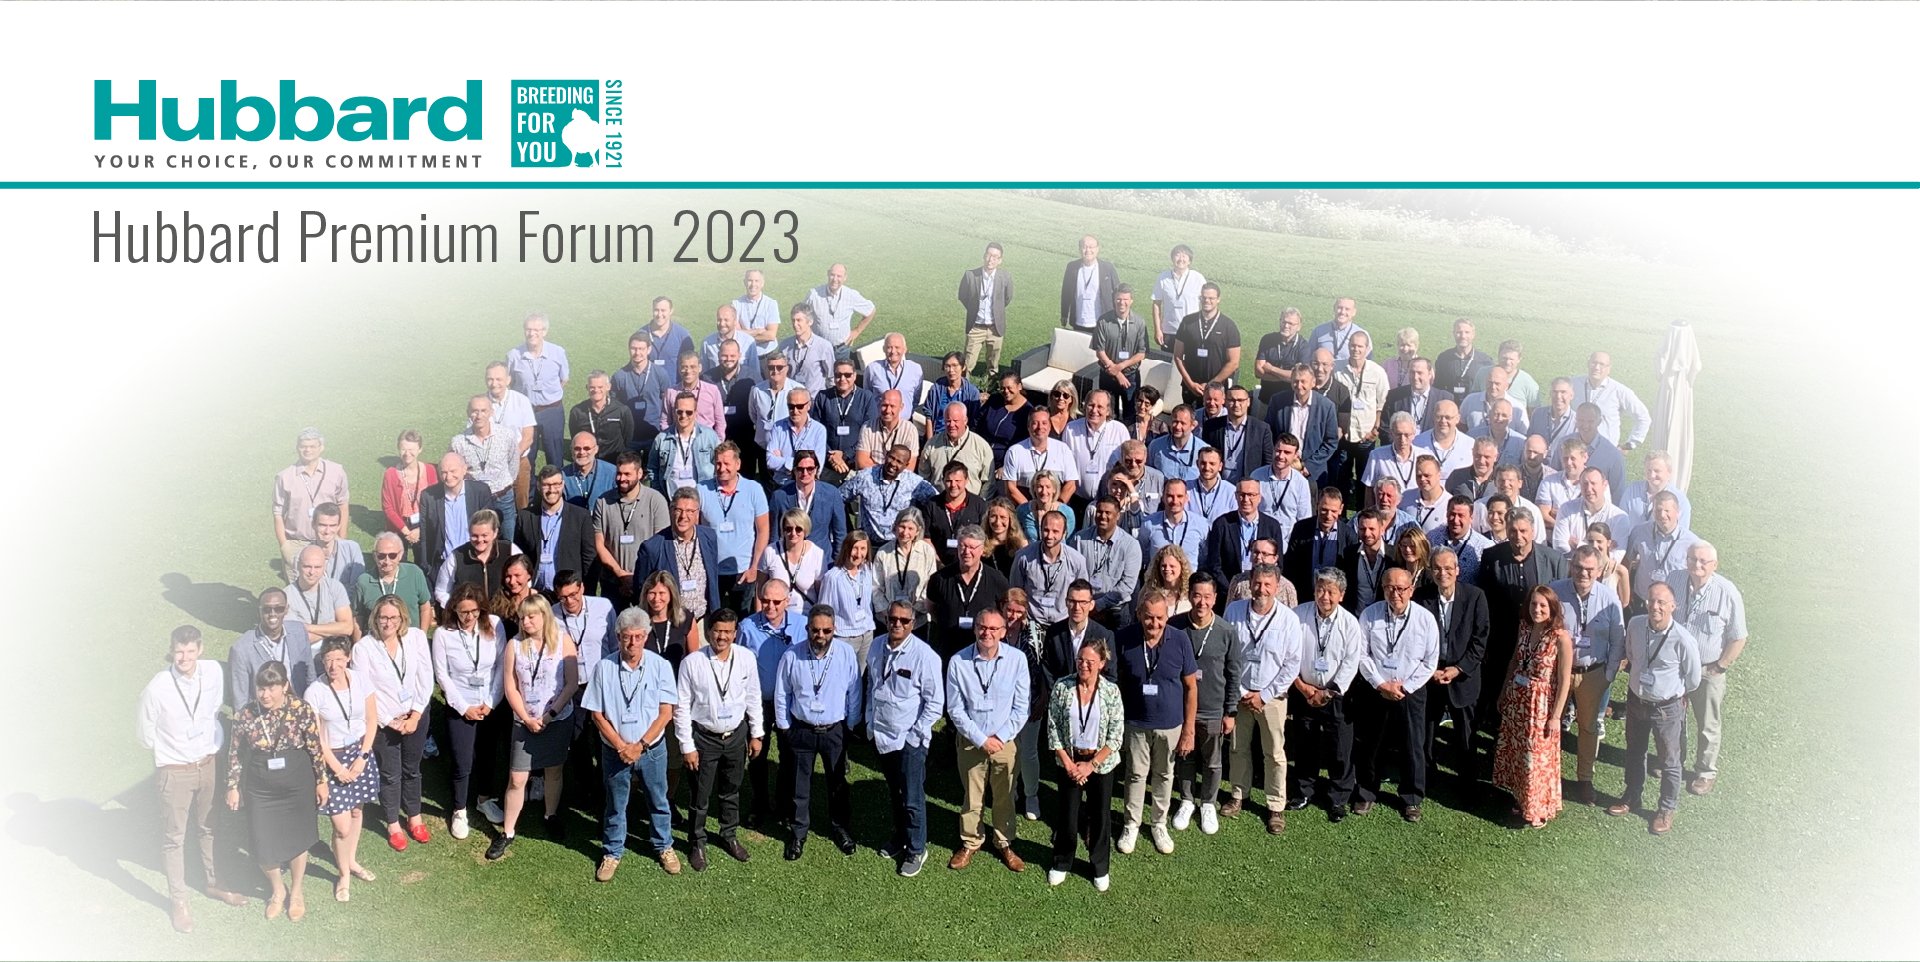 Hubbard Premium Forum 2023